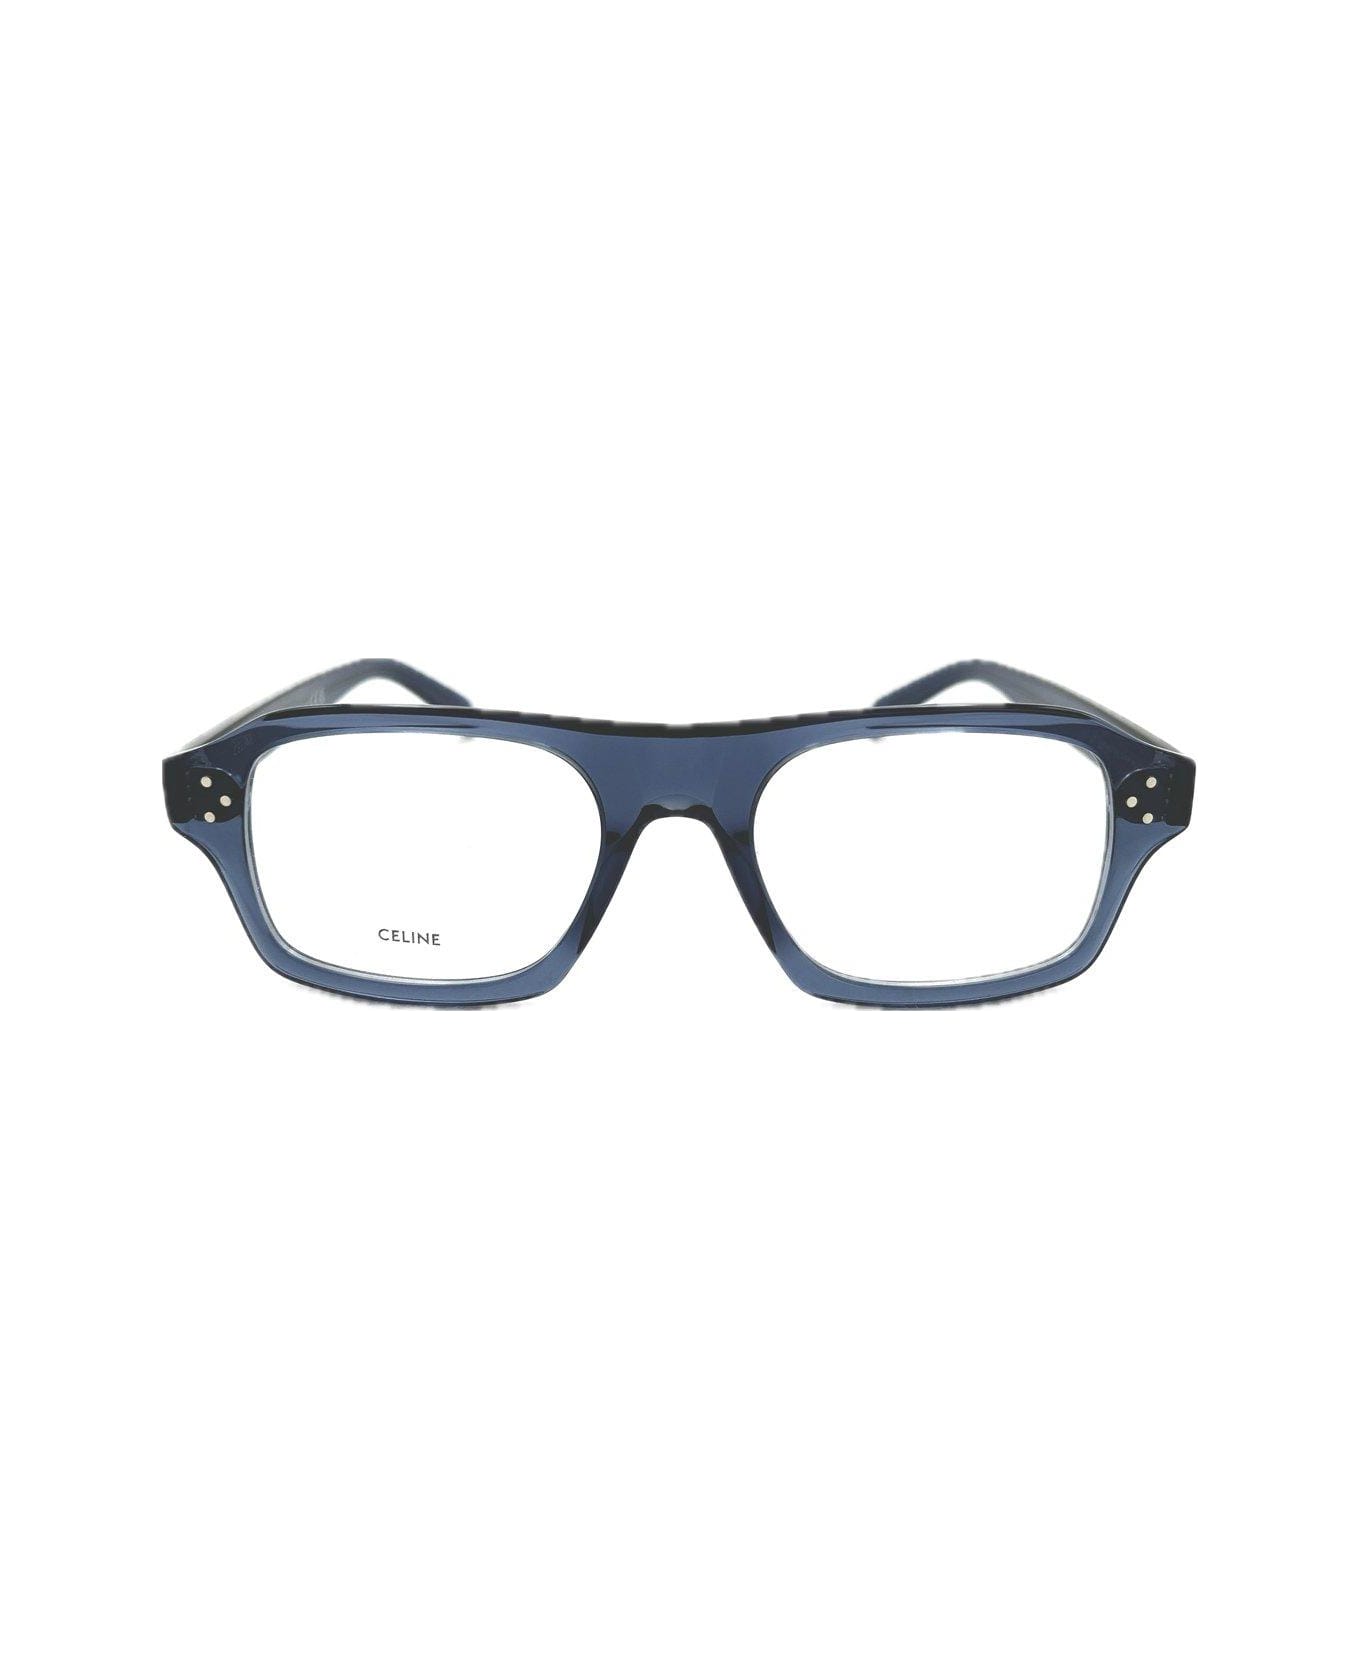 Celine Square Framed Glasses - 090 アイウェア